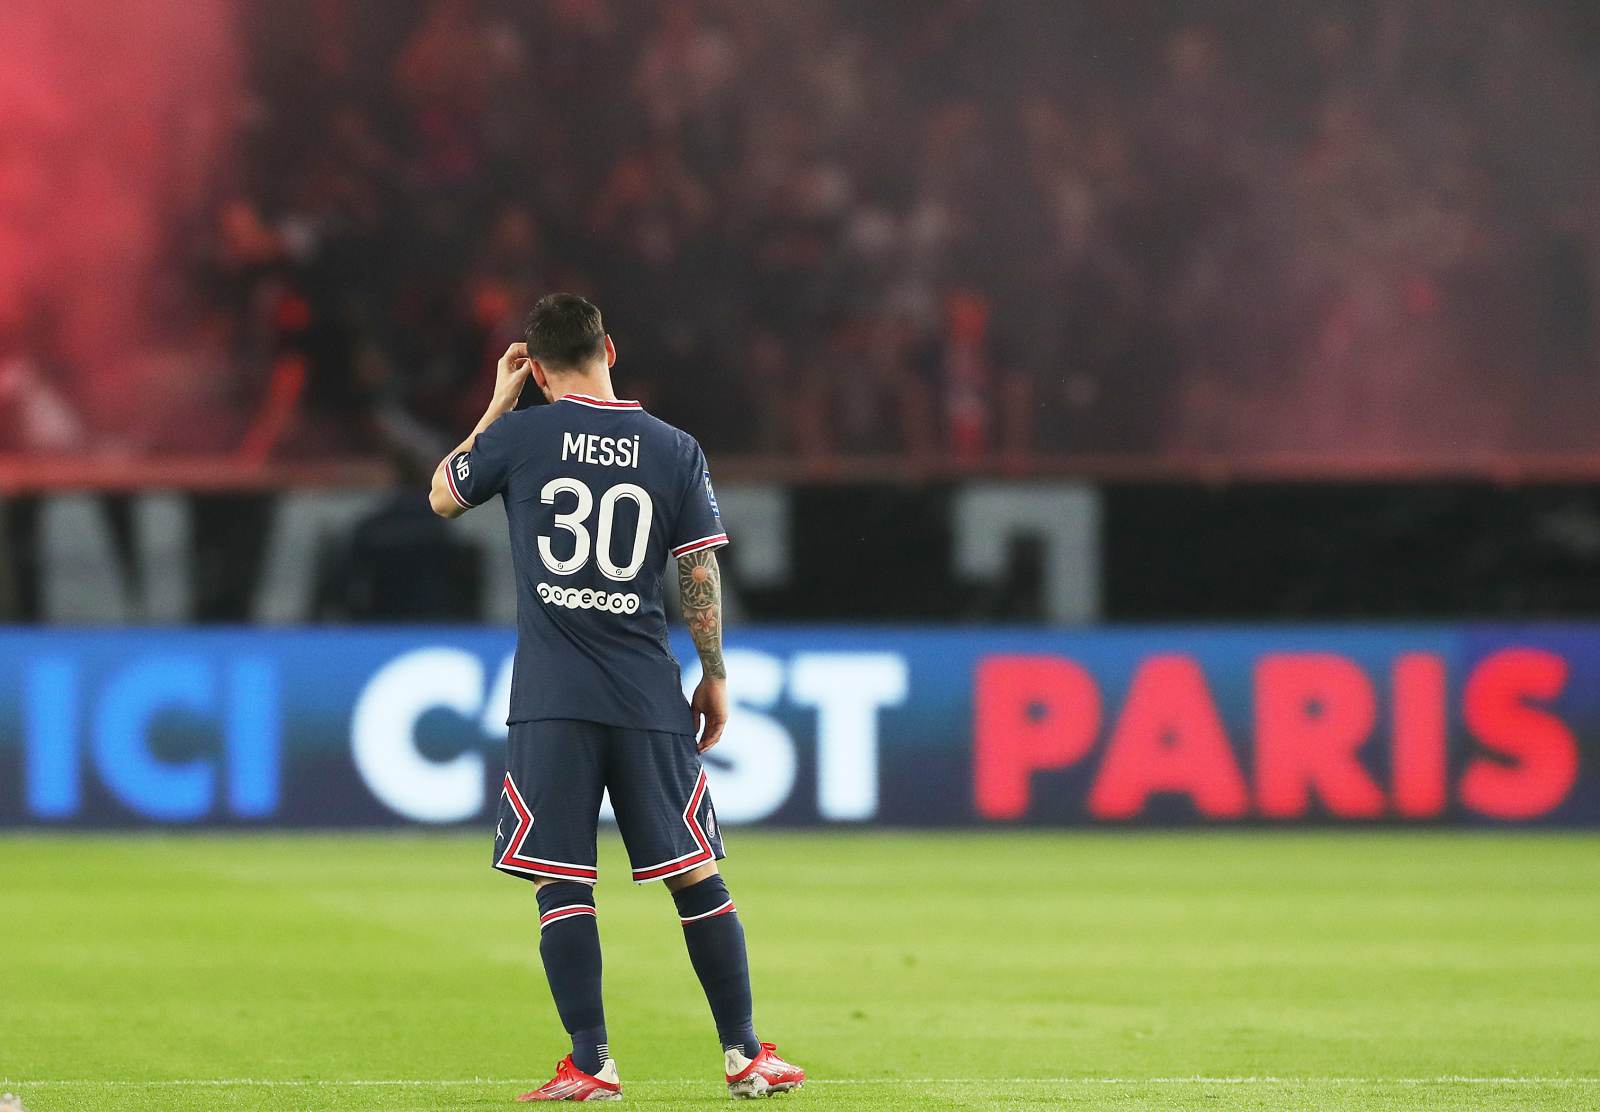 Средняя результативность Месси в чемпионате Франции - гол в более чем четырех матчах